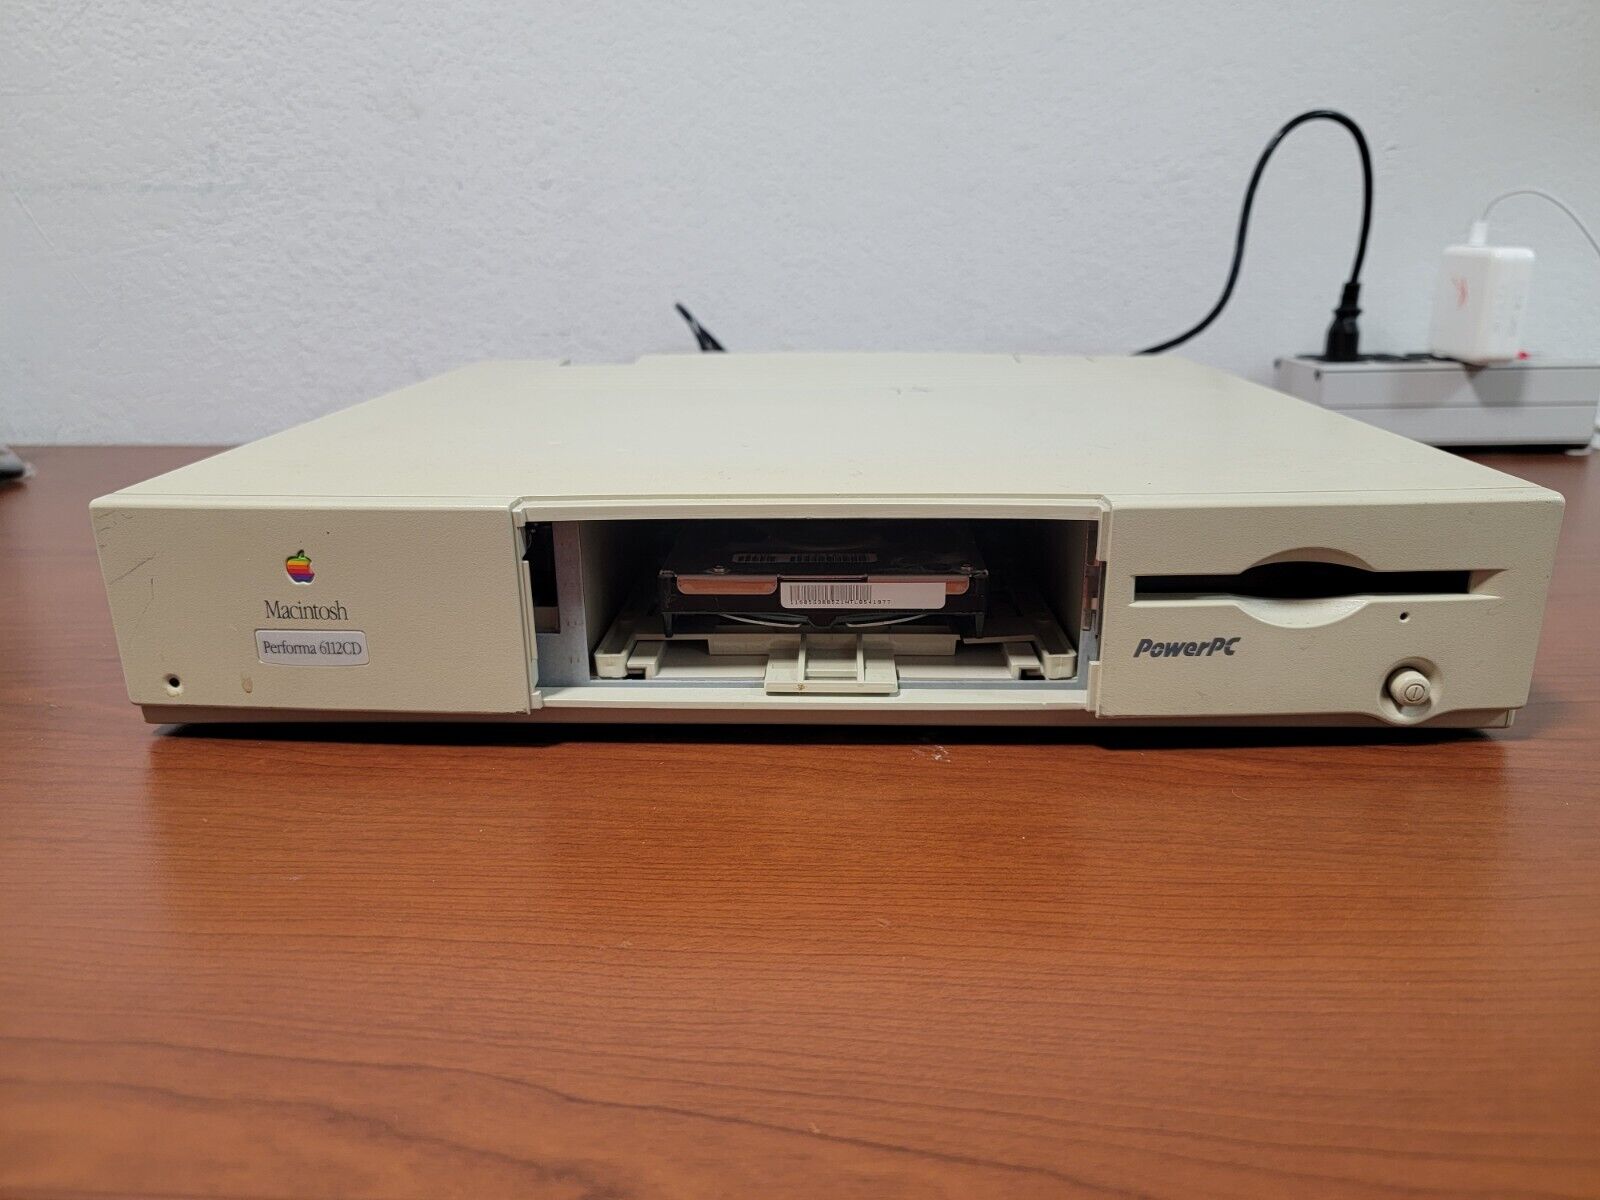 VINTAGE APPLE Macintosh Performa 6112CD Power PC - TURNS ON, UNTESTED